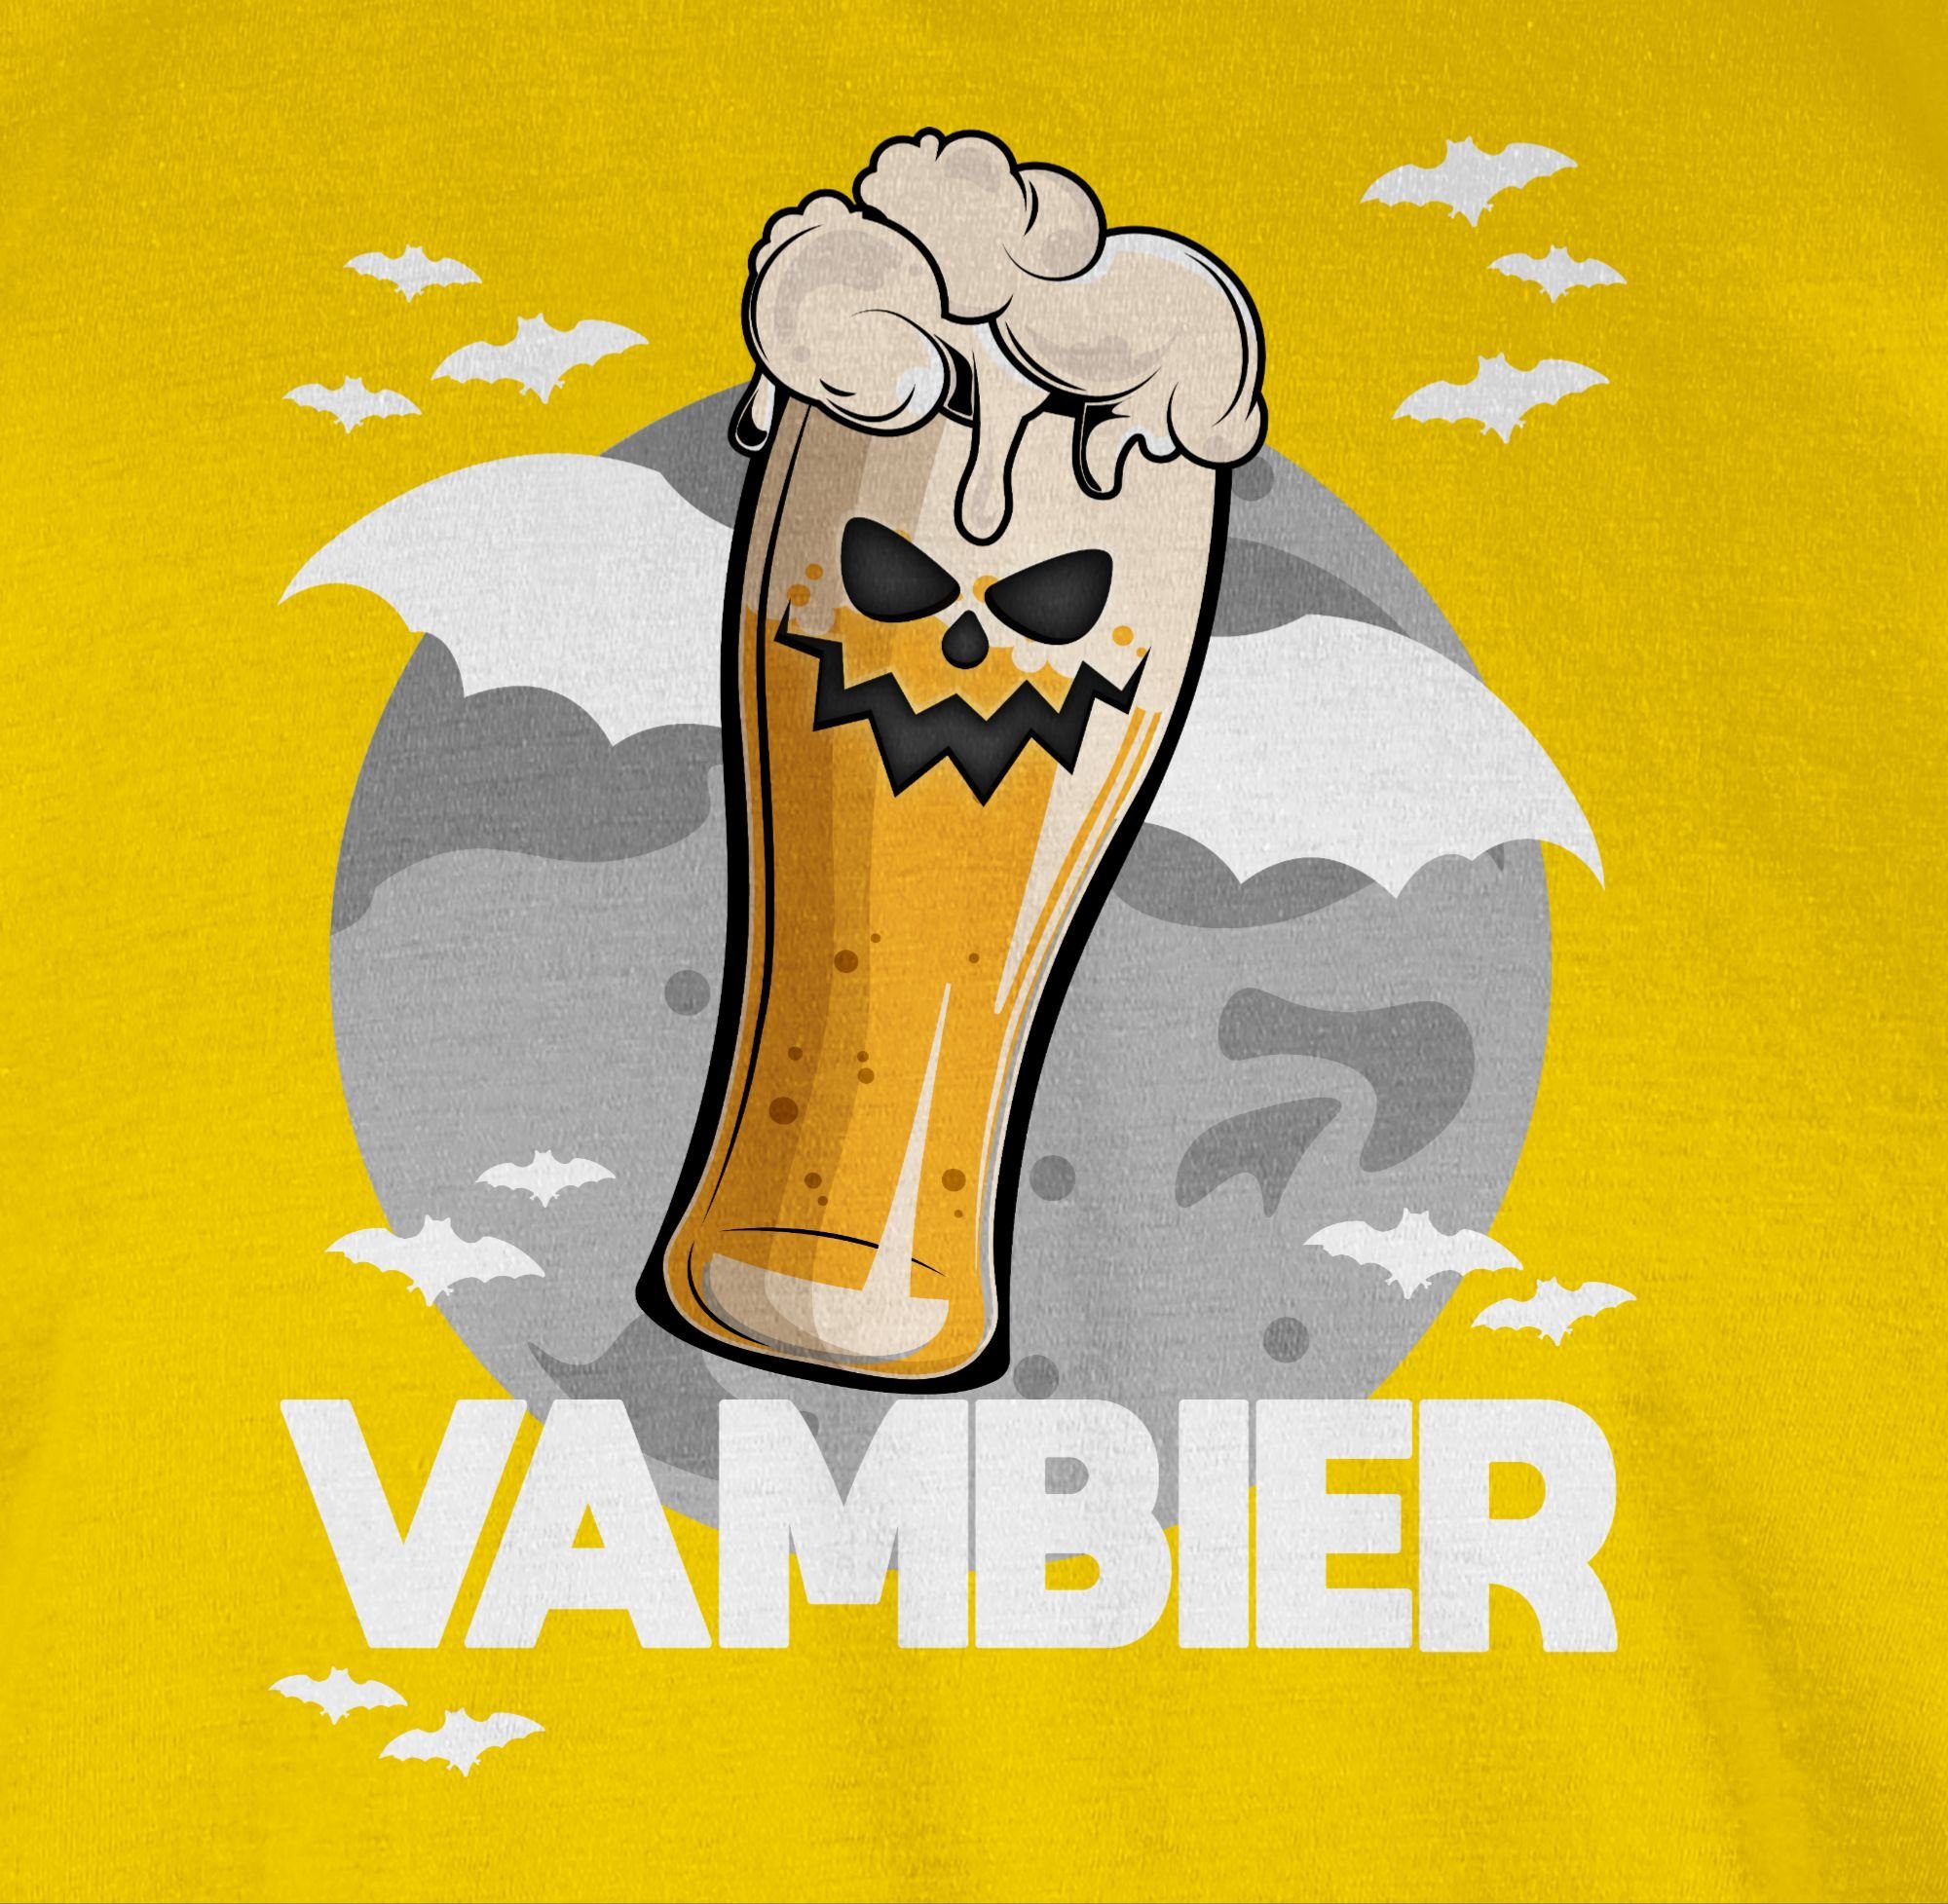 05 Zombie Gelb Geschenk Shirtracer Bier Kostüme Herren Vambier Halloween T-Shirt